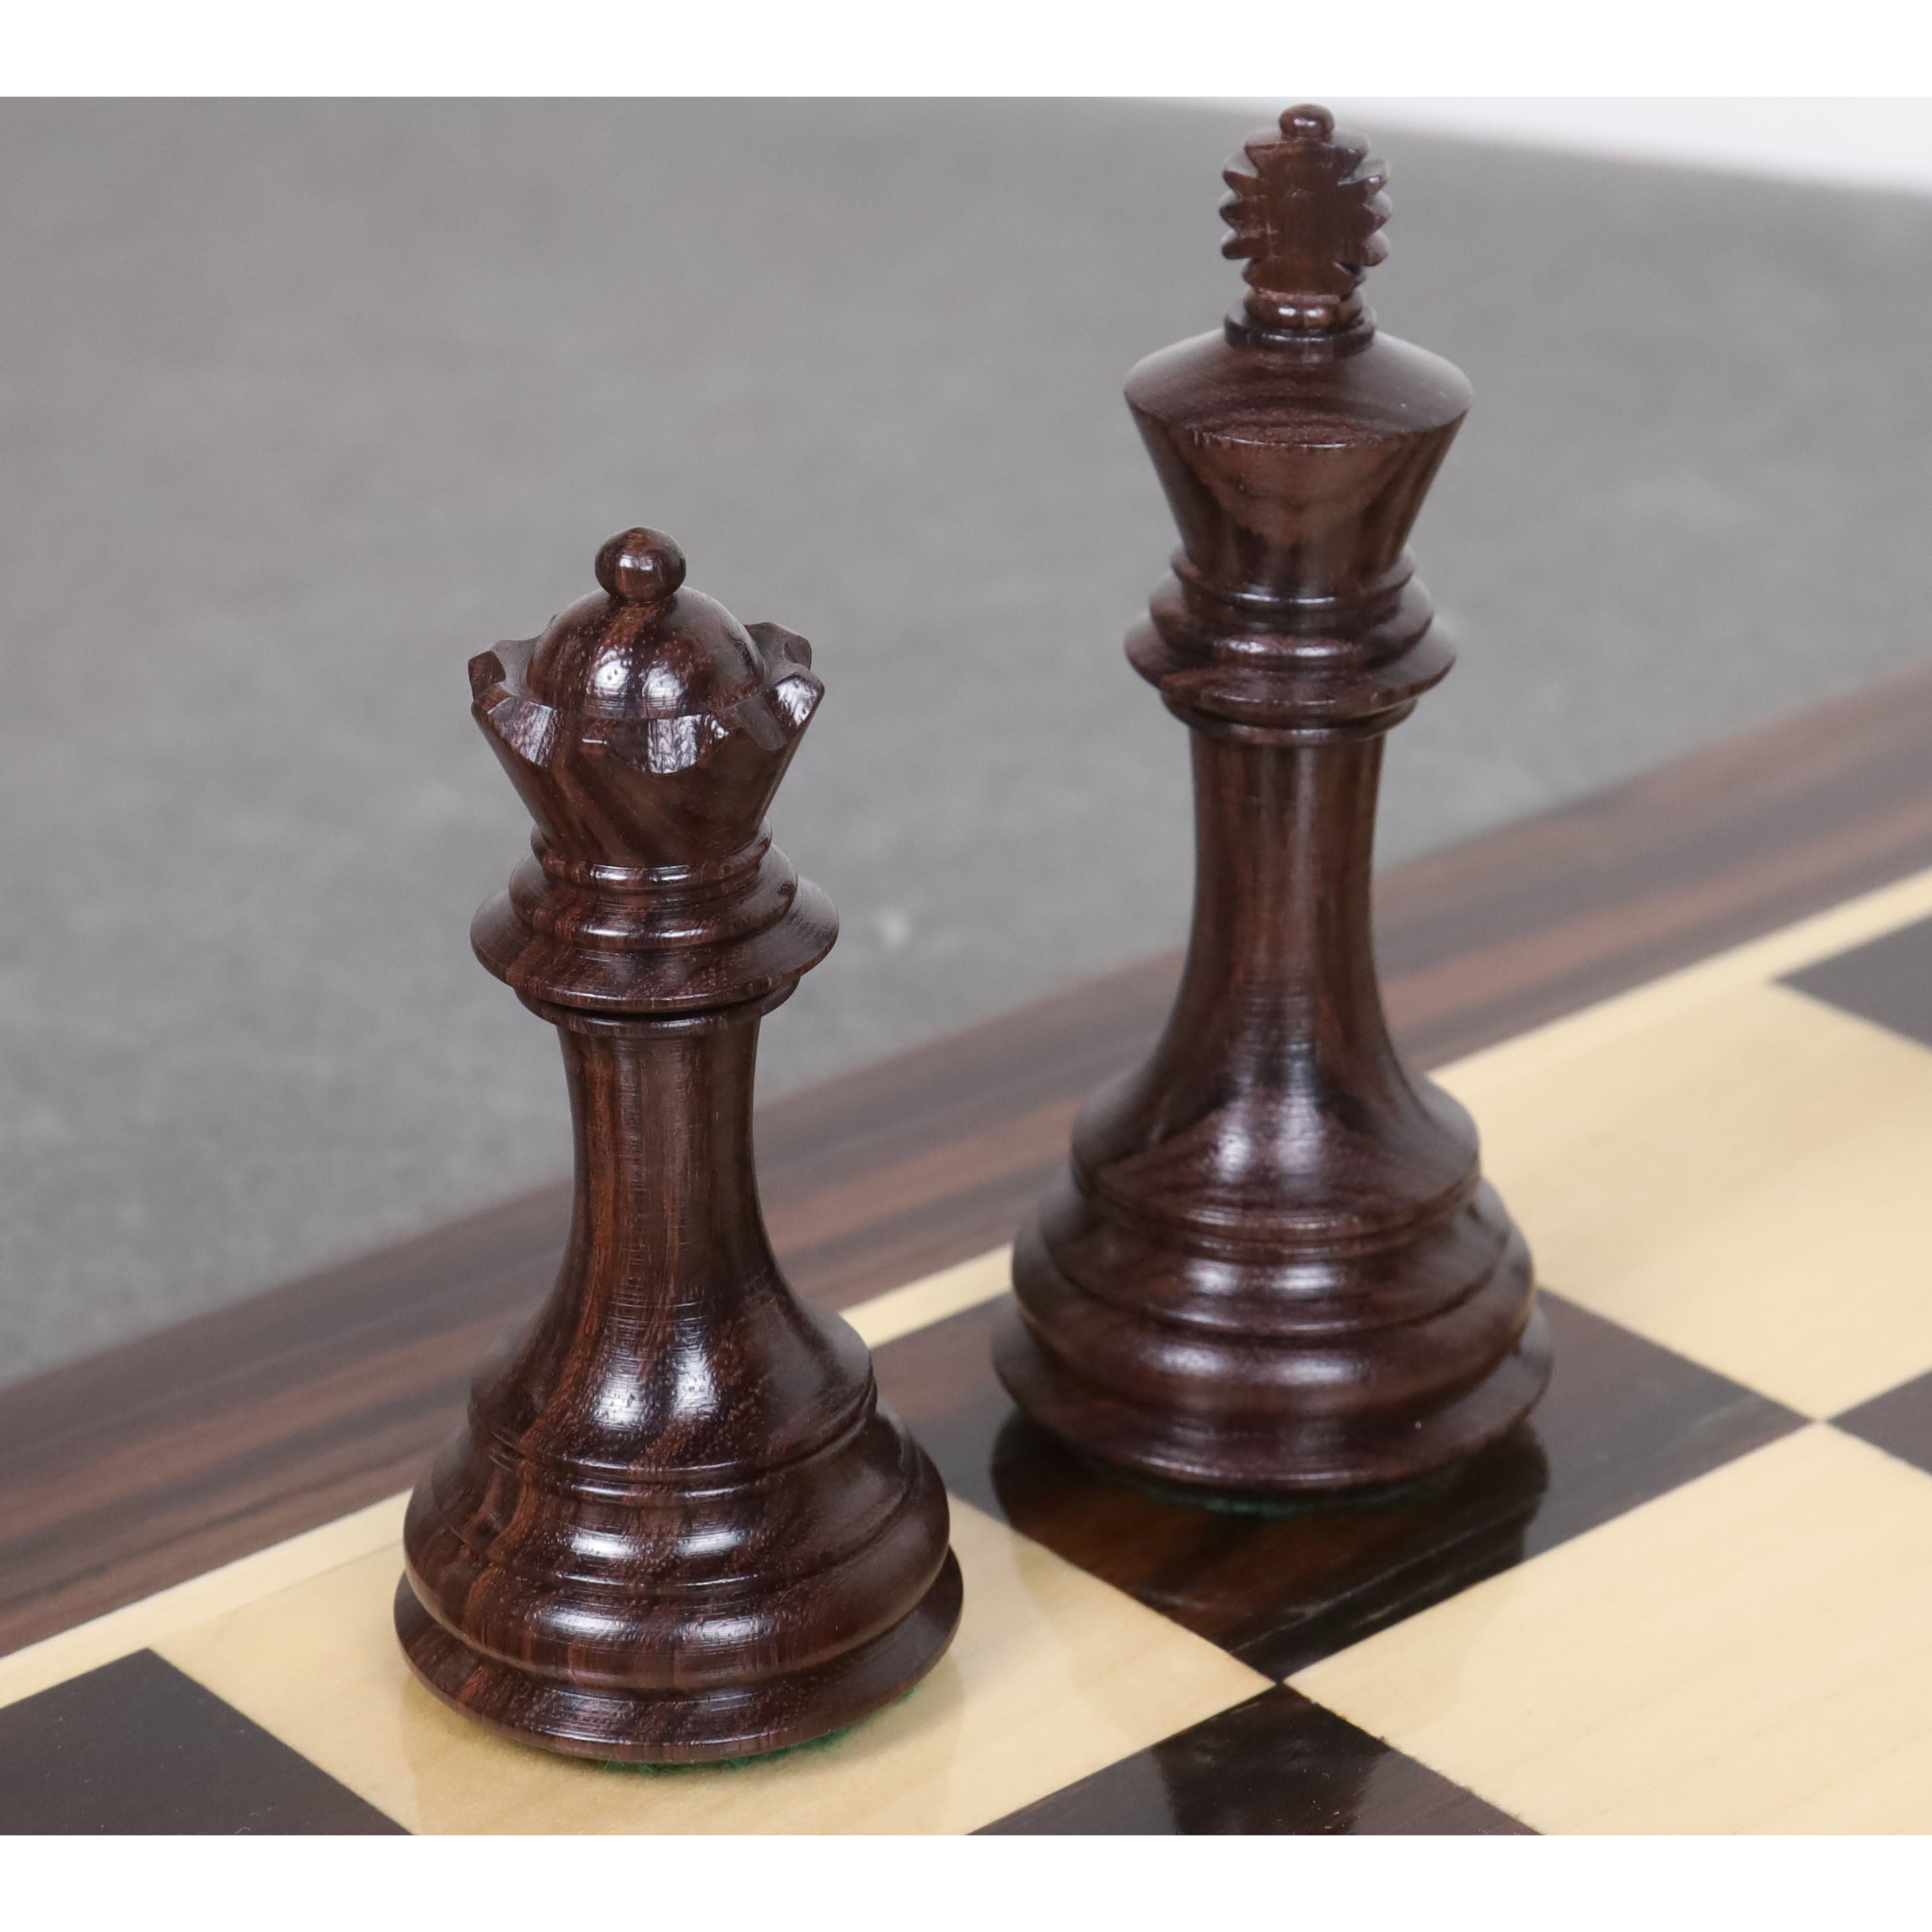 Piezas de ajedrez de calidad Columbian